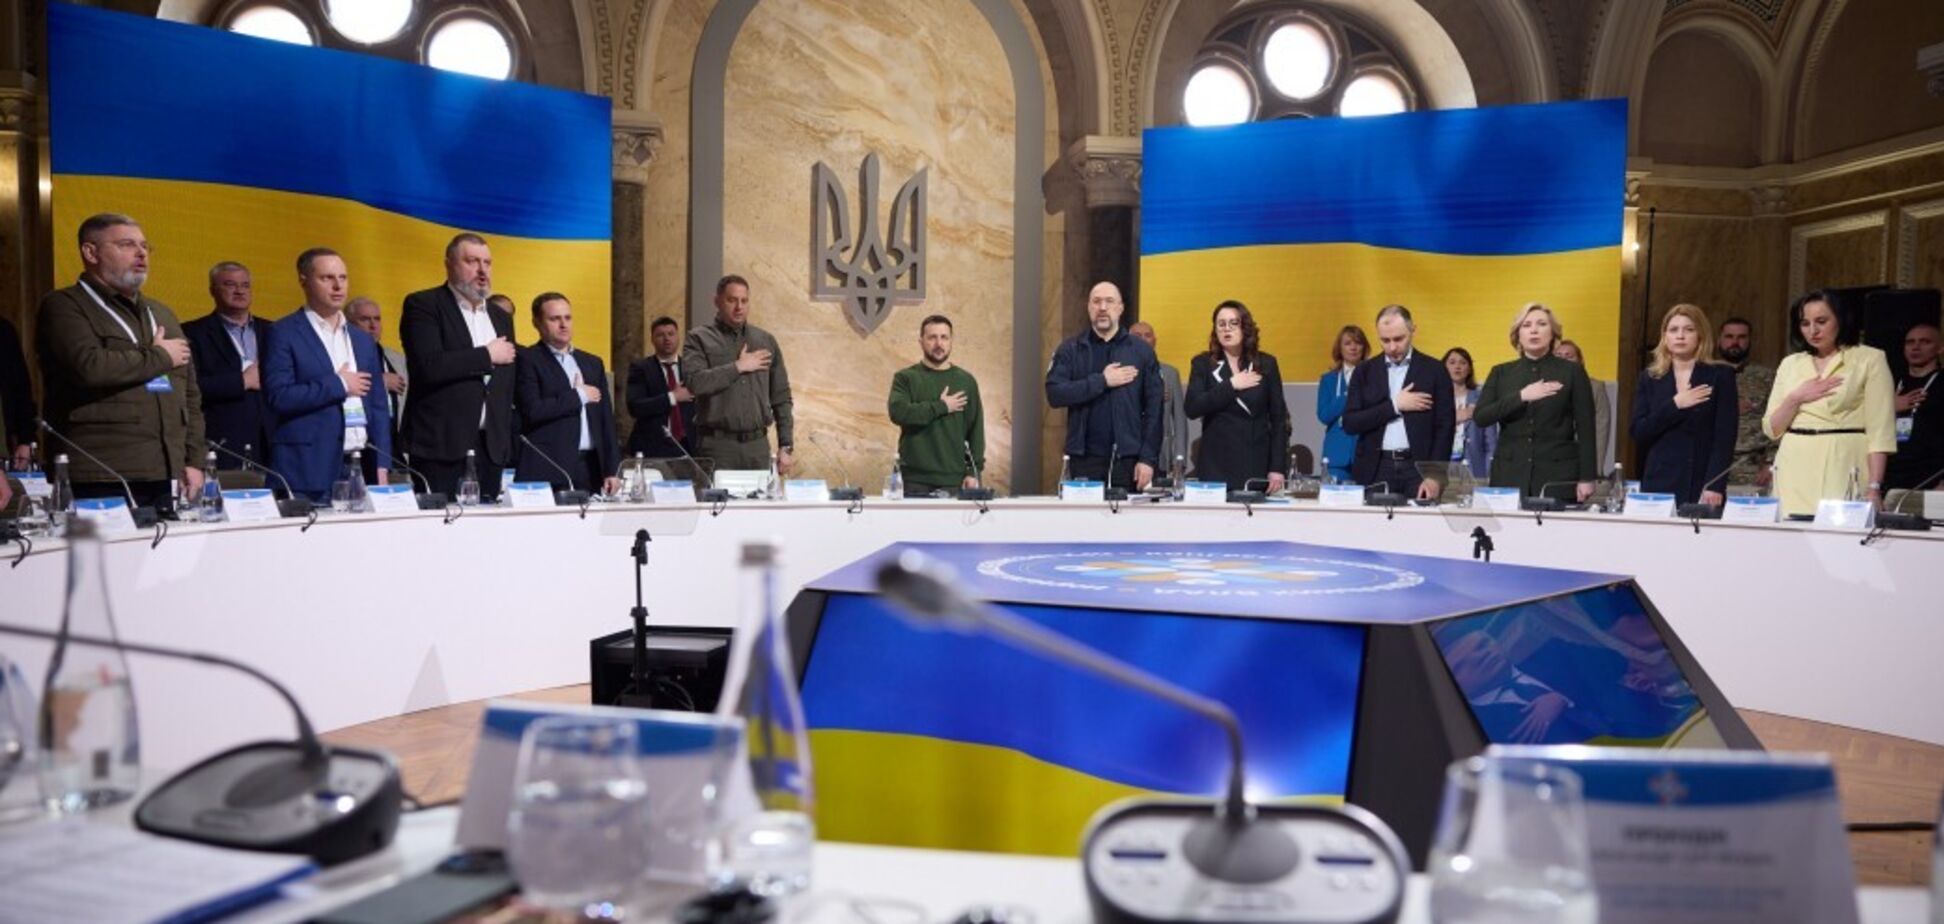 'Остановить российскую агрессию': Зеленский напомнил местным властям главную потребность всех украинцев. Фото и видео